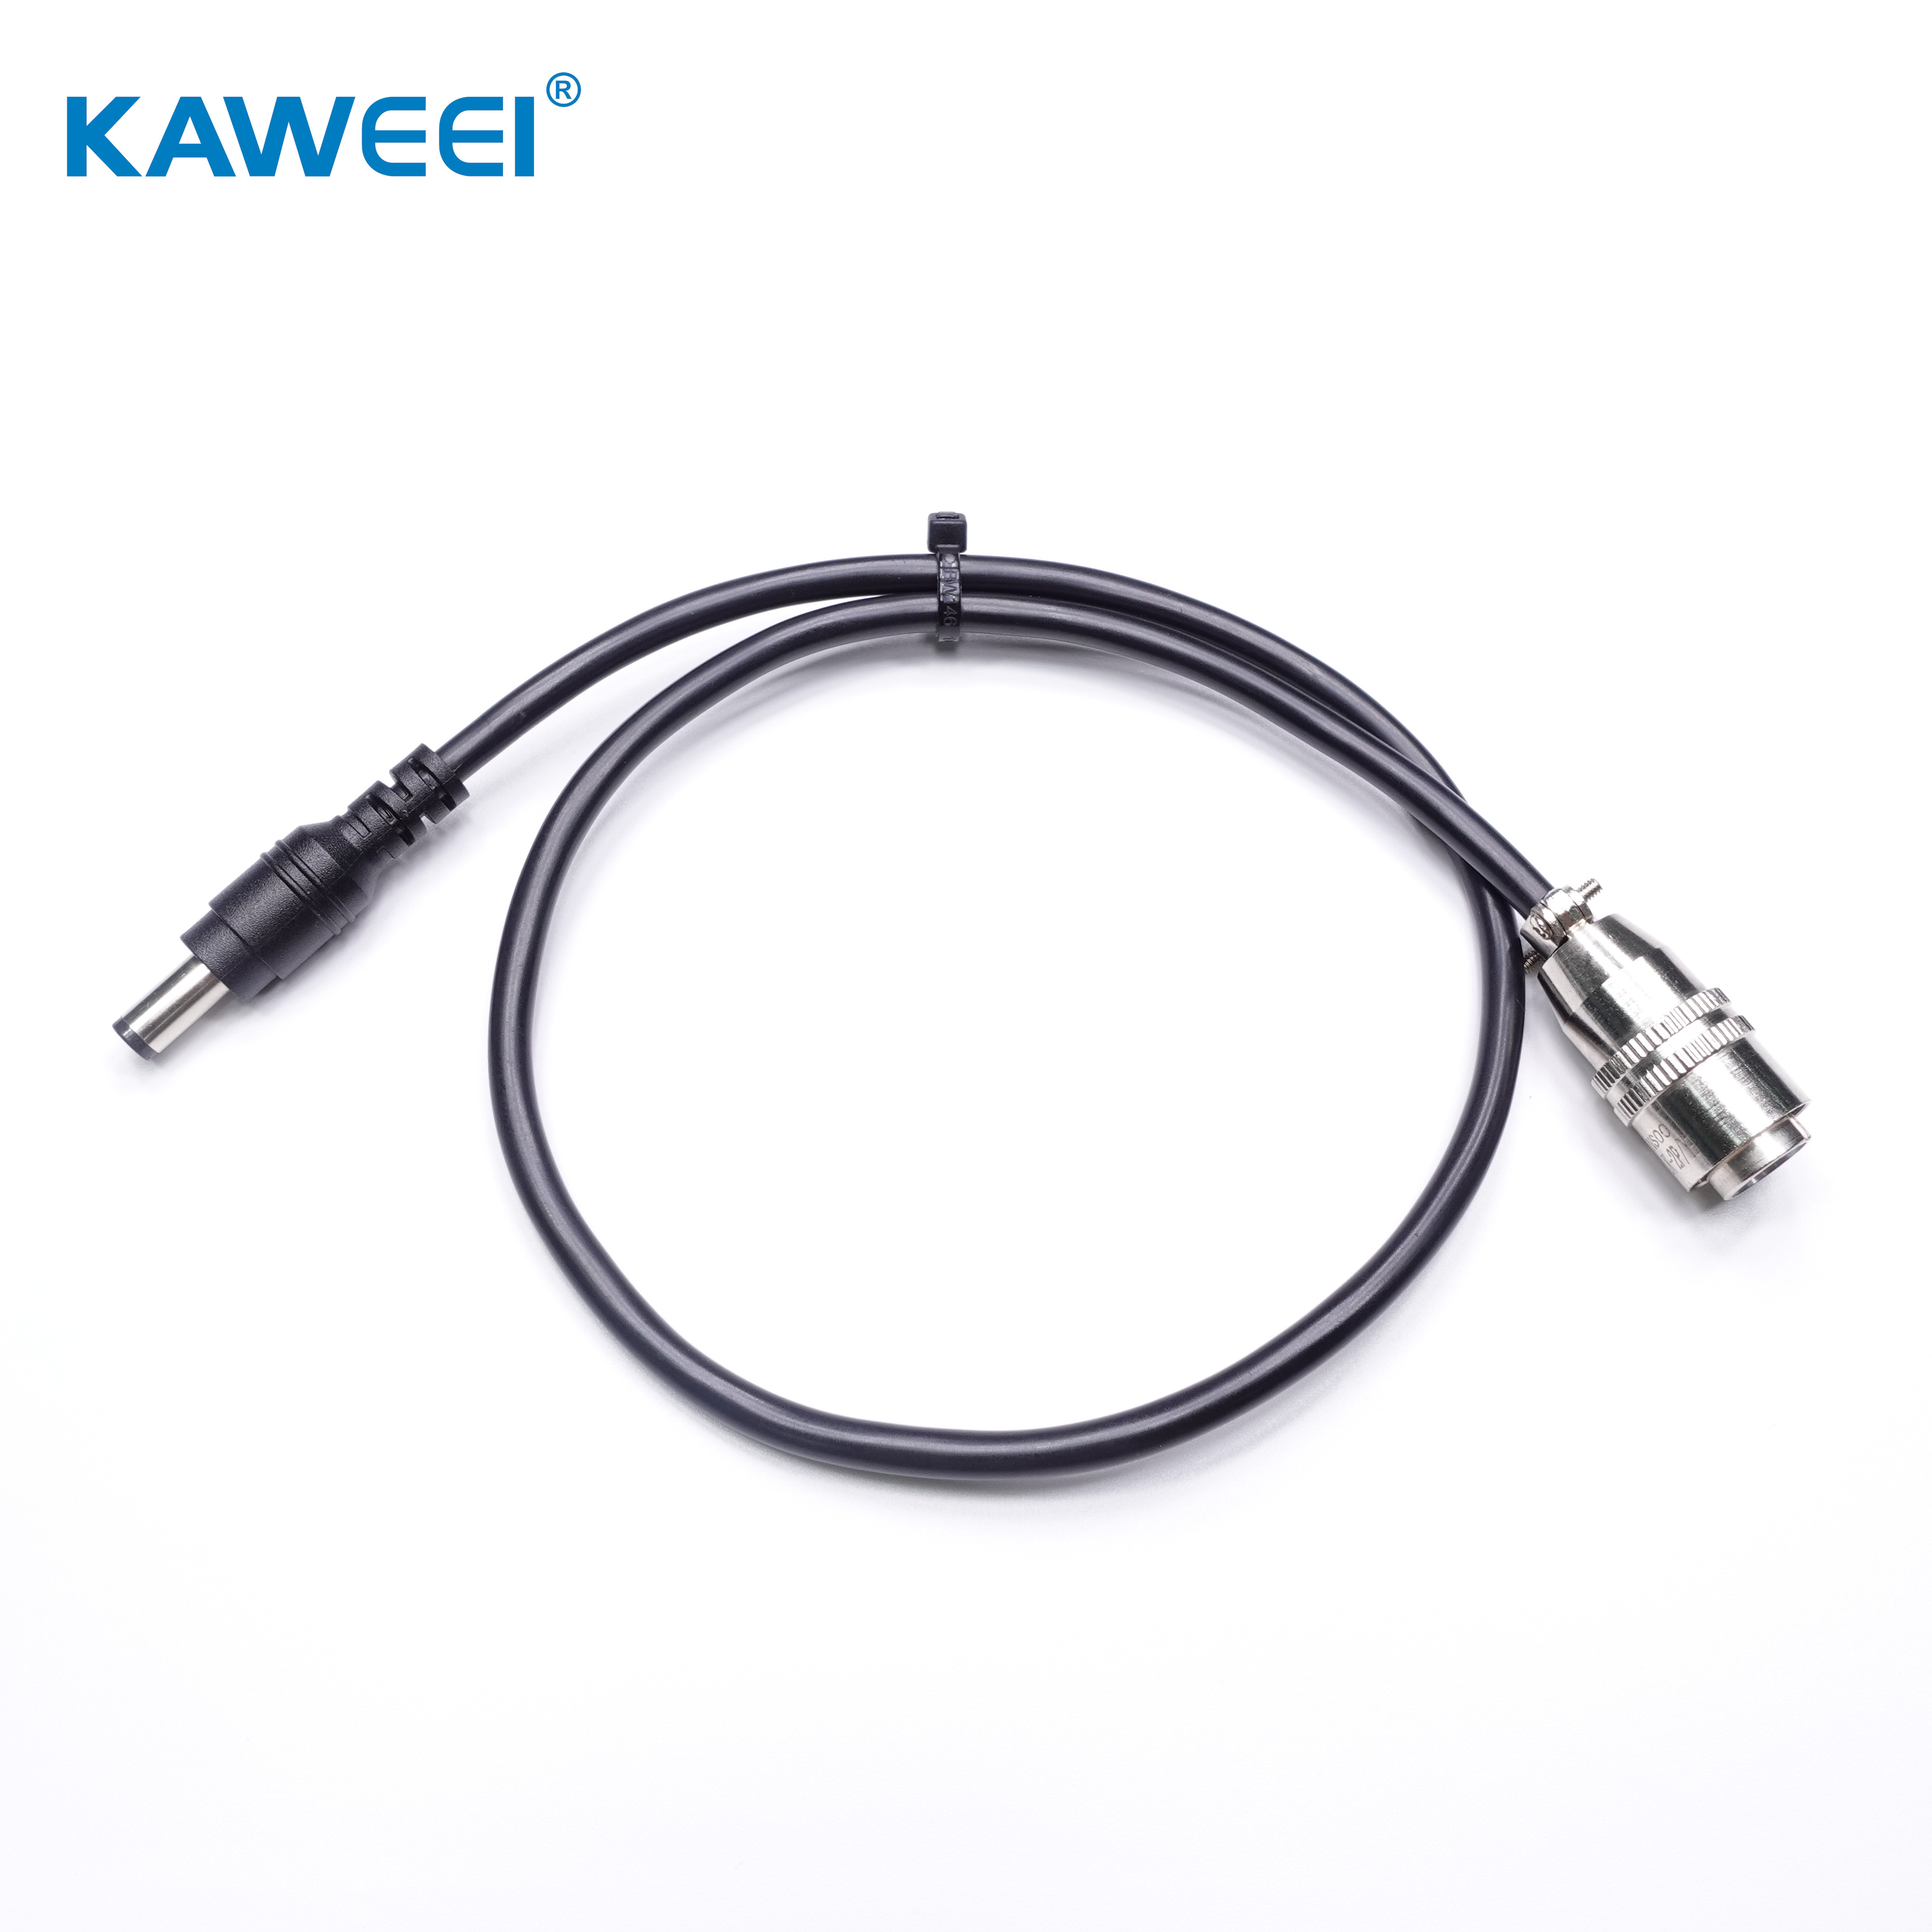 ክብ አቪዬሽን አያያዥ 2Pins ወንድ አየር አቪዬሽን GX12 ወደ ዲሲ ያቀና Plug Connector Cable Assembly ራስ-ሰር የኬብል መገጣጠሚያ